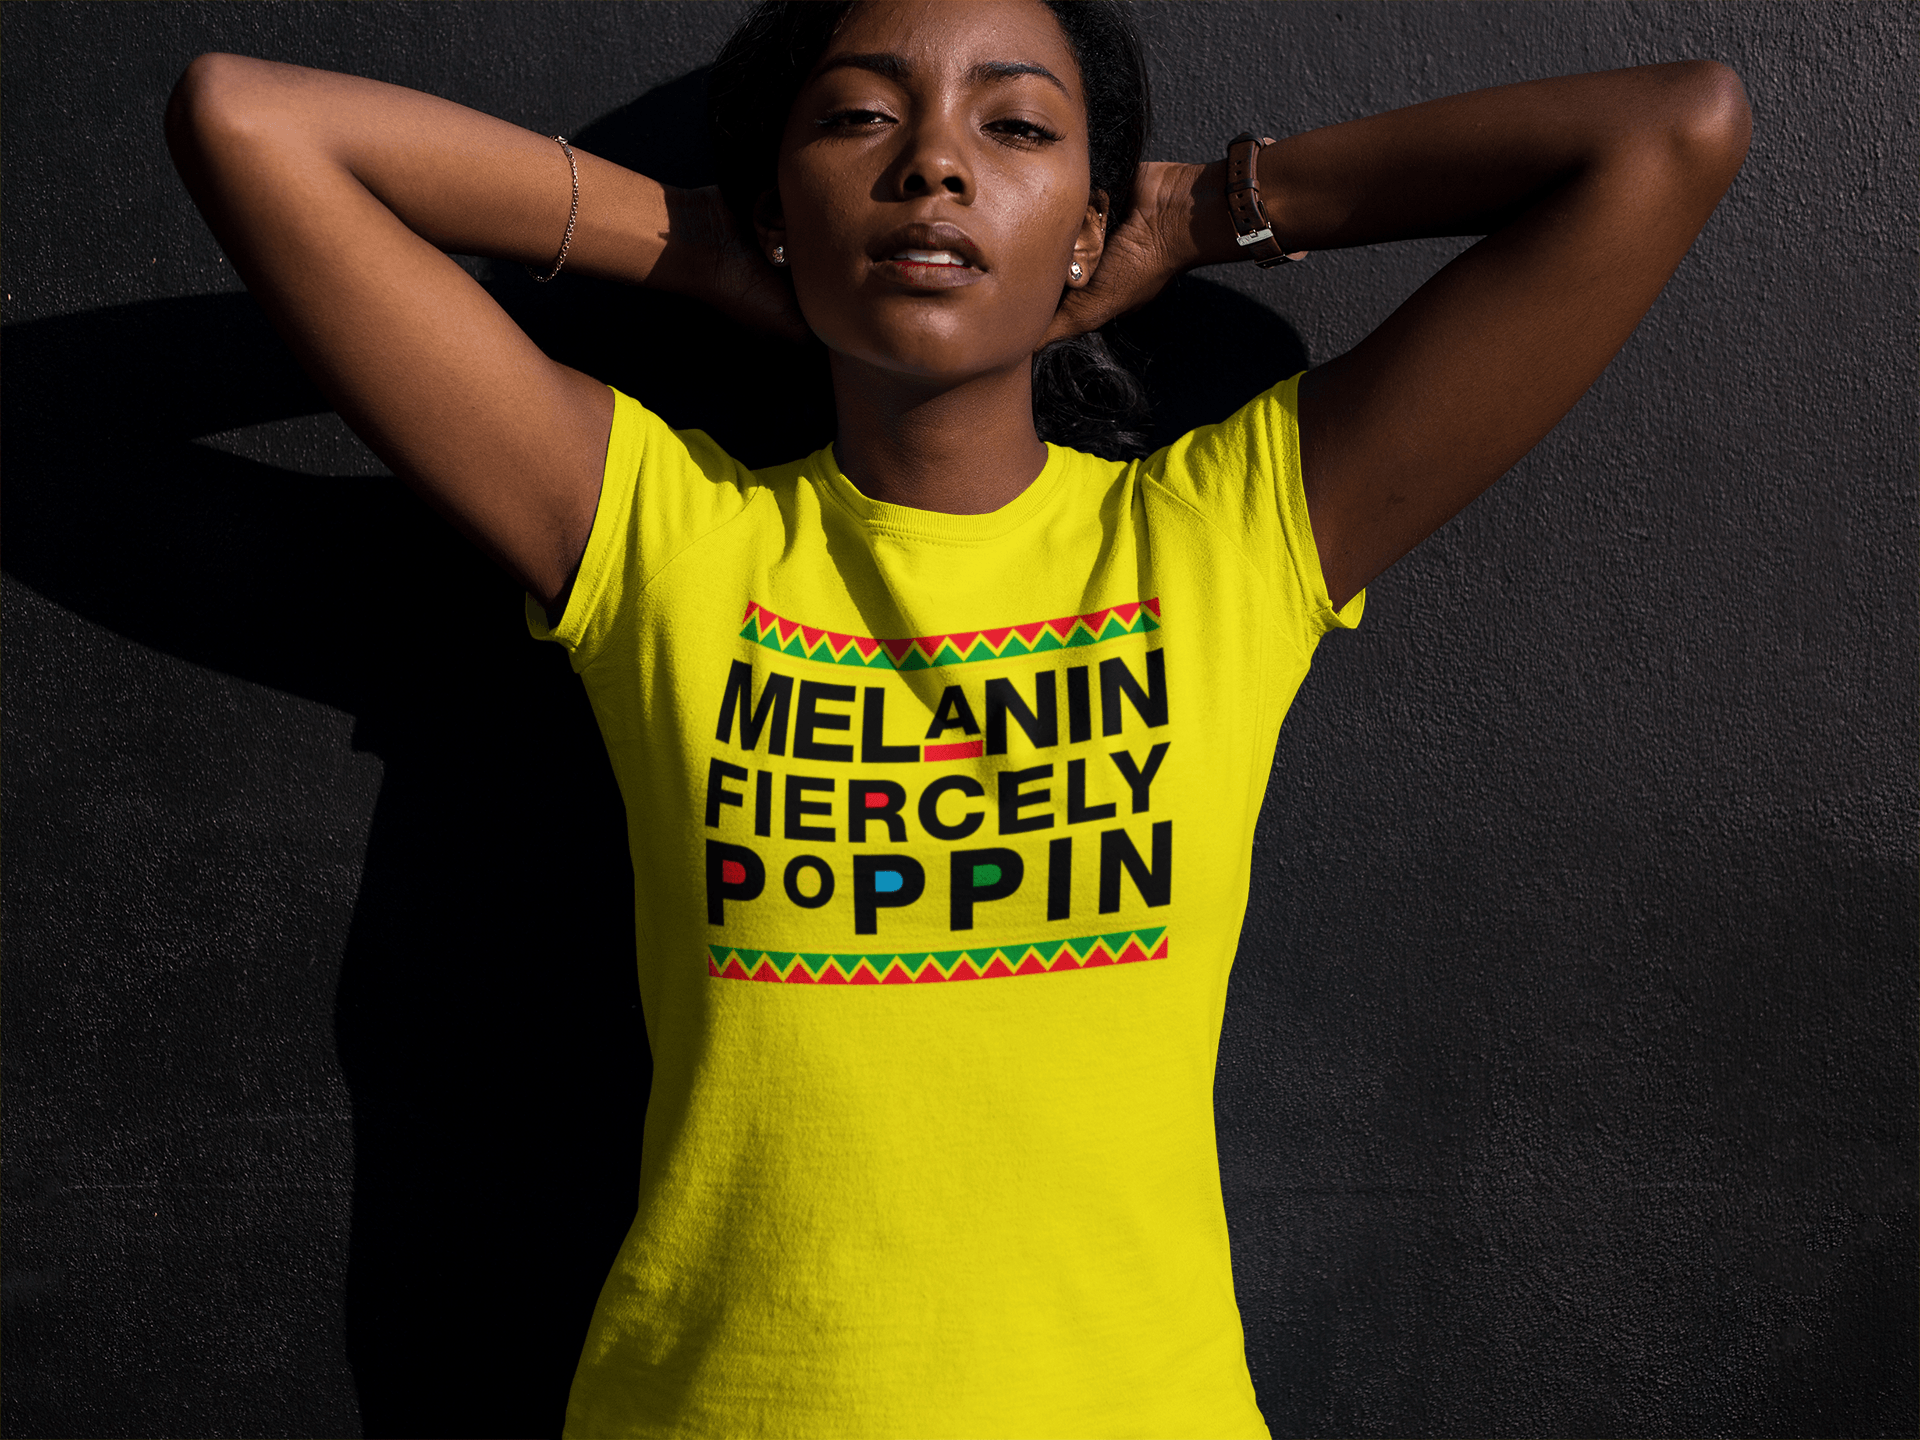 My Melanin be Poppin